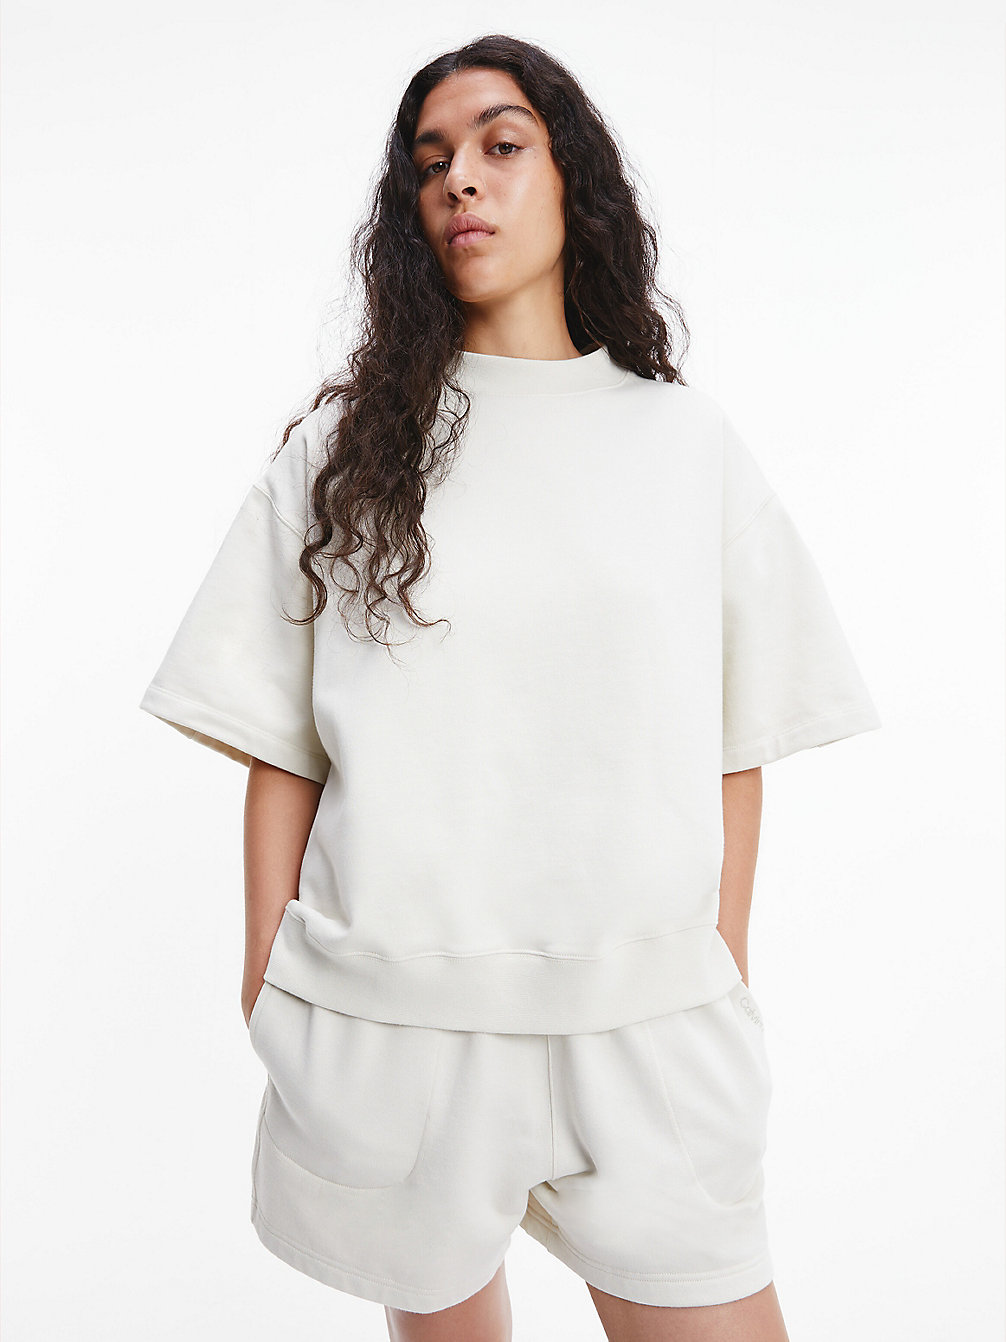 BONE WHITE > Unisex Sweatshirt Met Korte Mouwen - CK Standards > undefined unisex - Calvin Klein